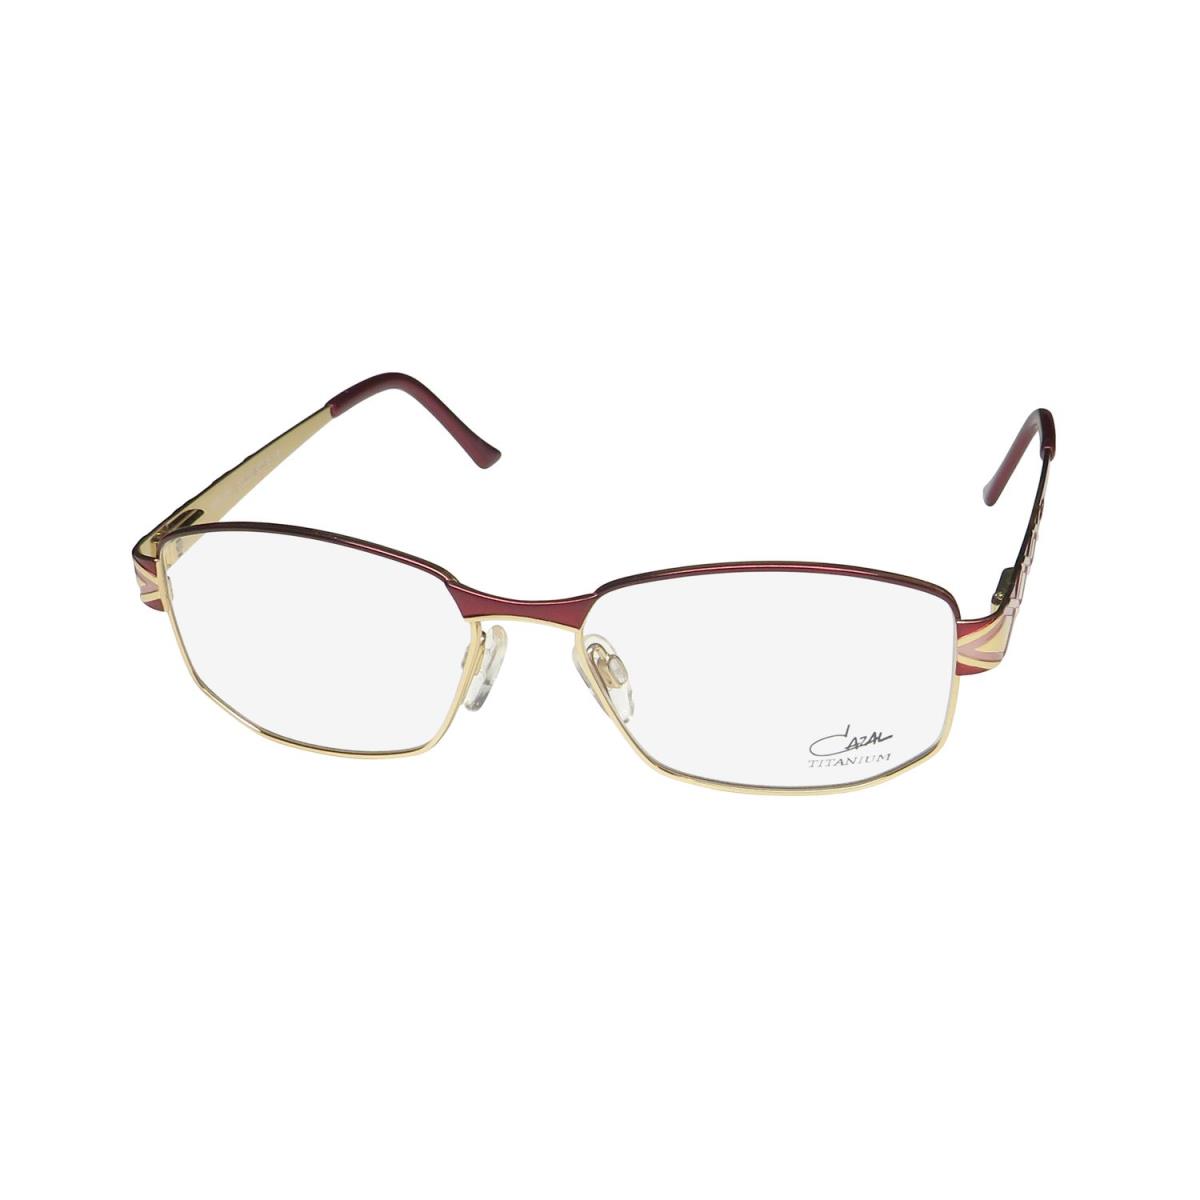 Cazal 1251 Titanium Imported From Germany Sophisticated Eyeglass Frame/eyewear Burgundy / Gold